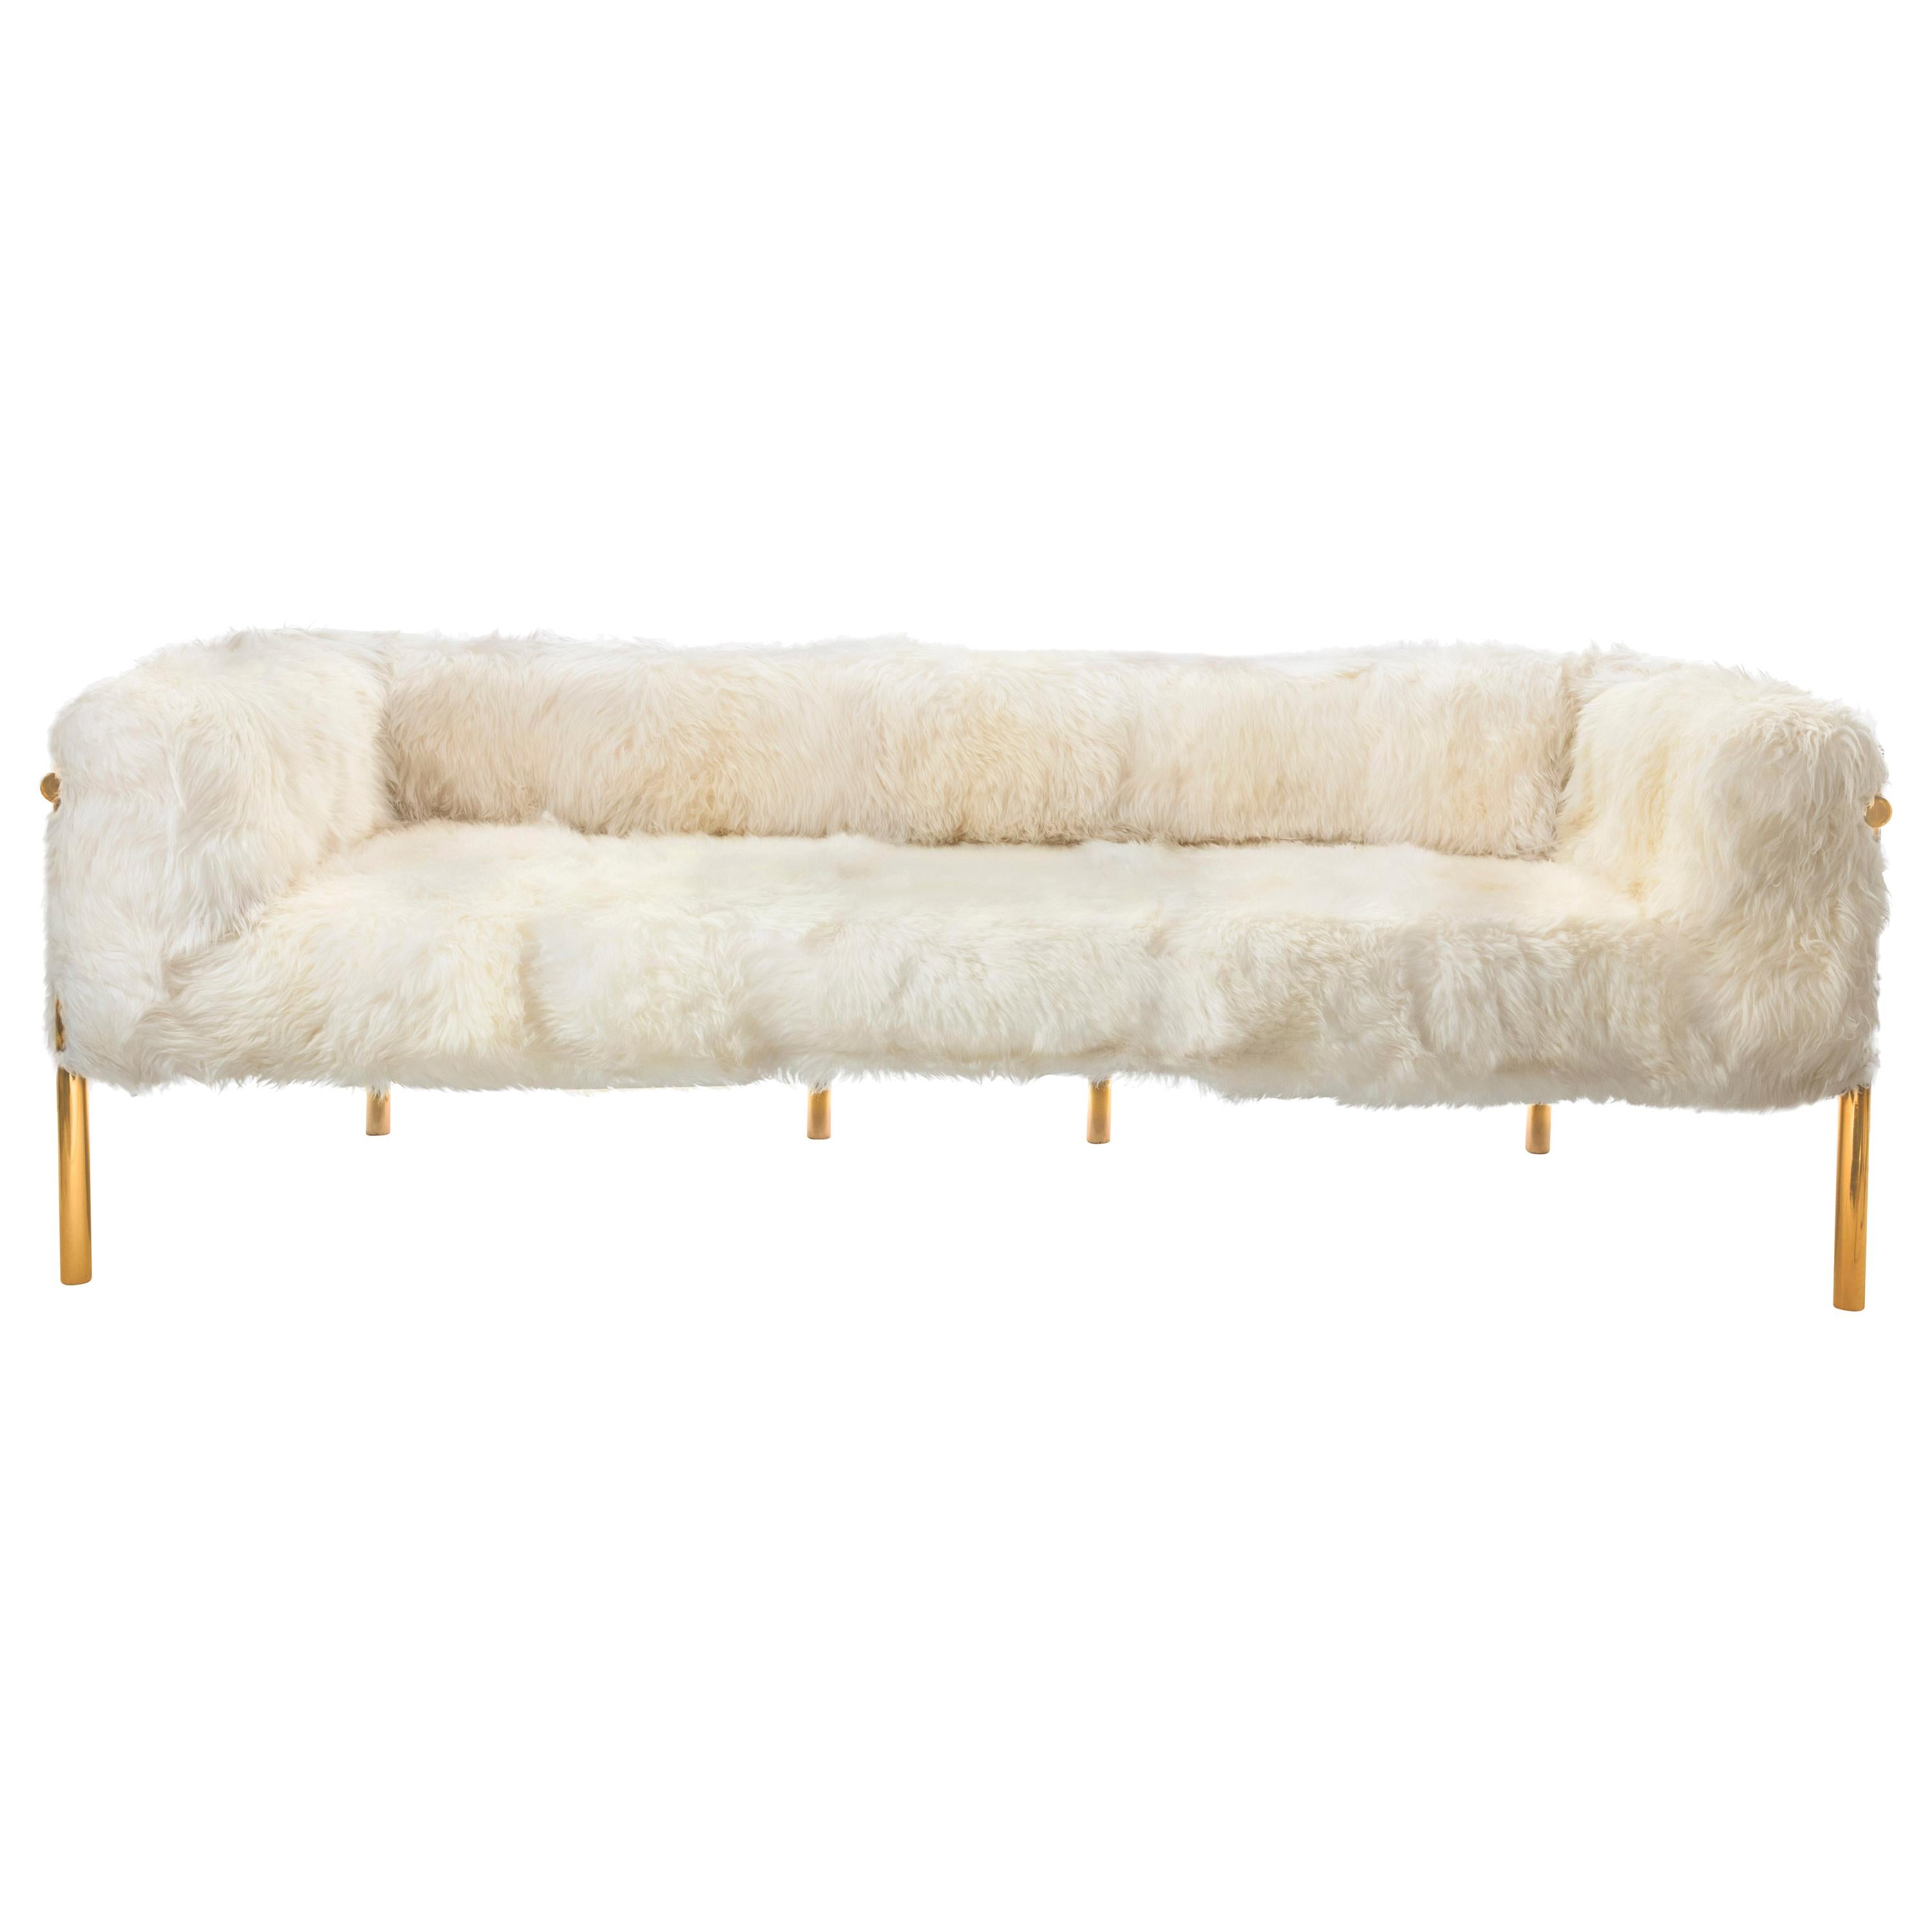 Coronum 3-sitziges sofa aus goldfarbenem schafsfell von Artefatto Design Studio